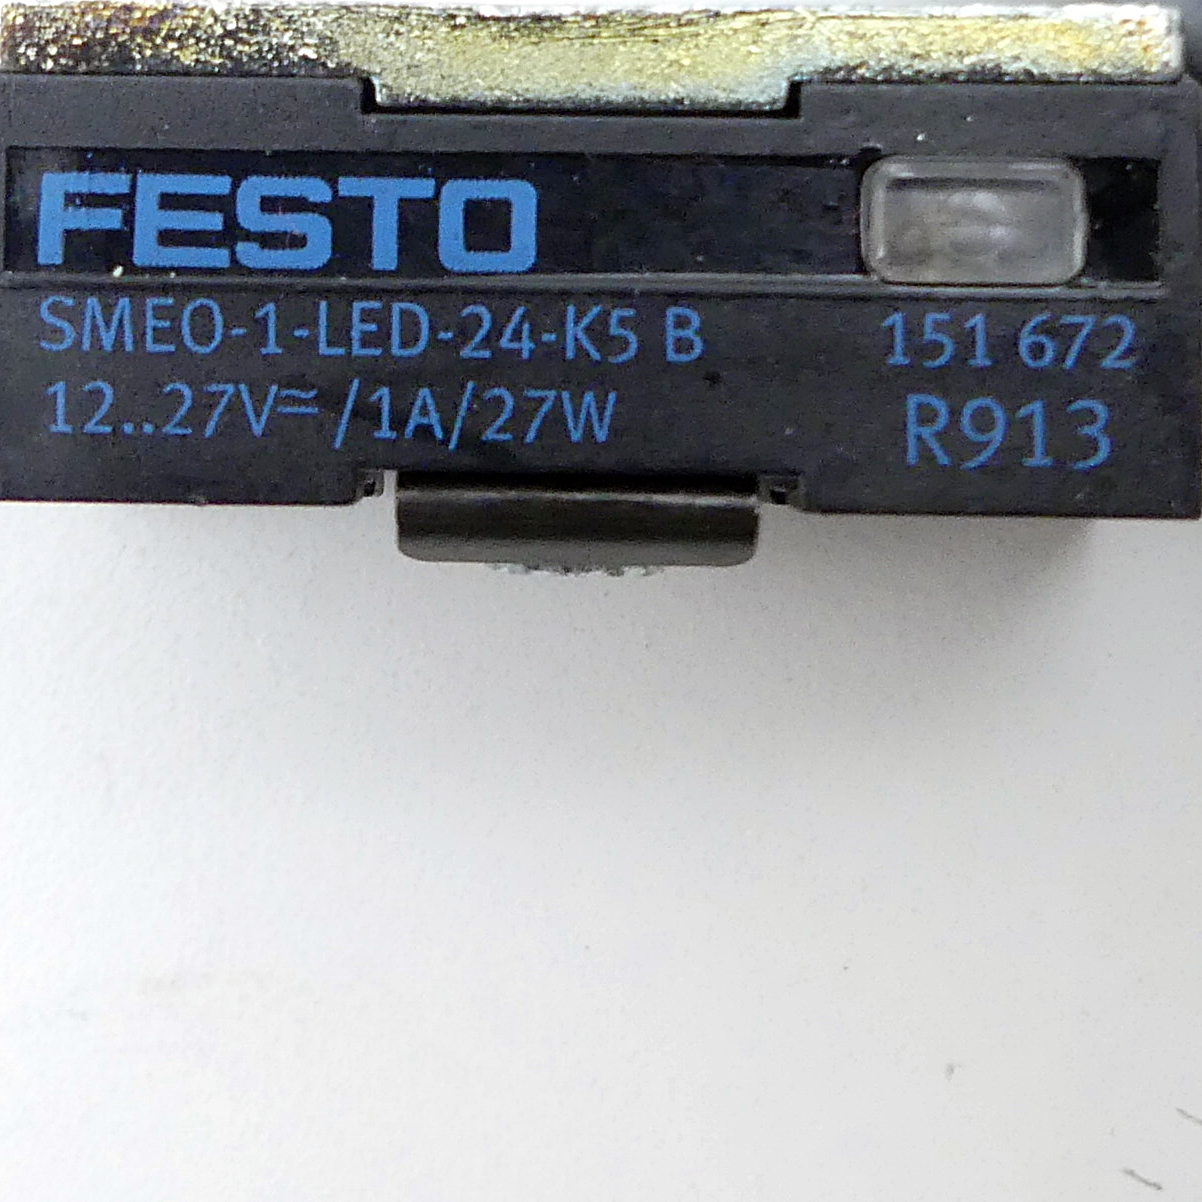 Proximity switch SMEO-1-LED-24-K5-B 